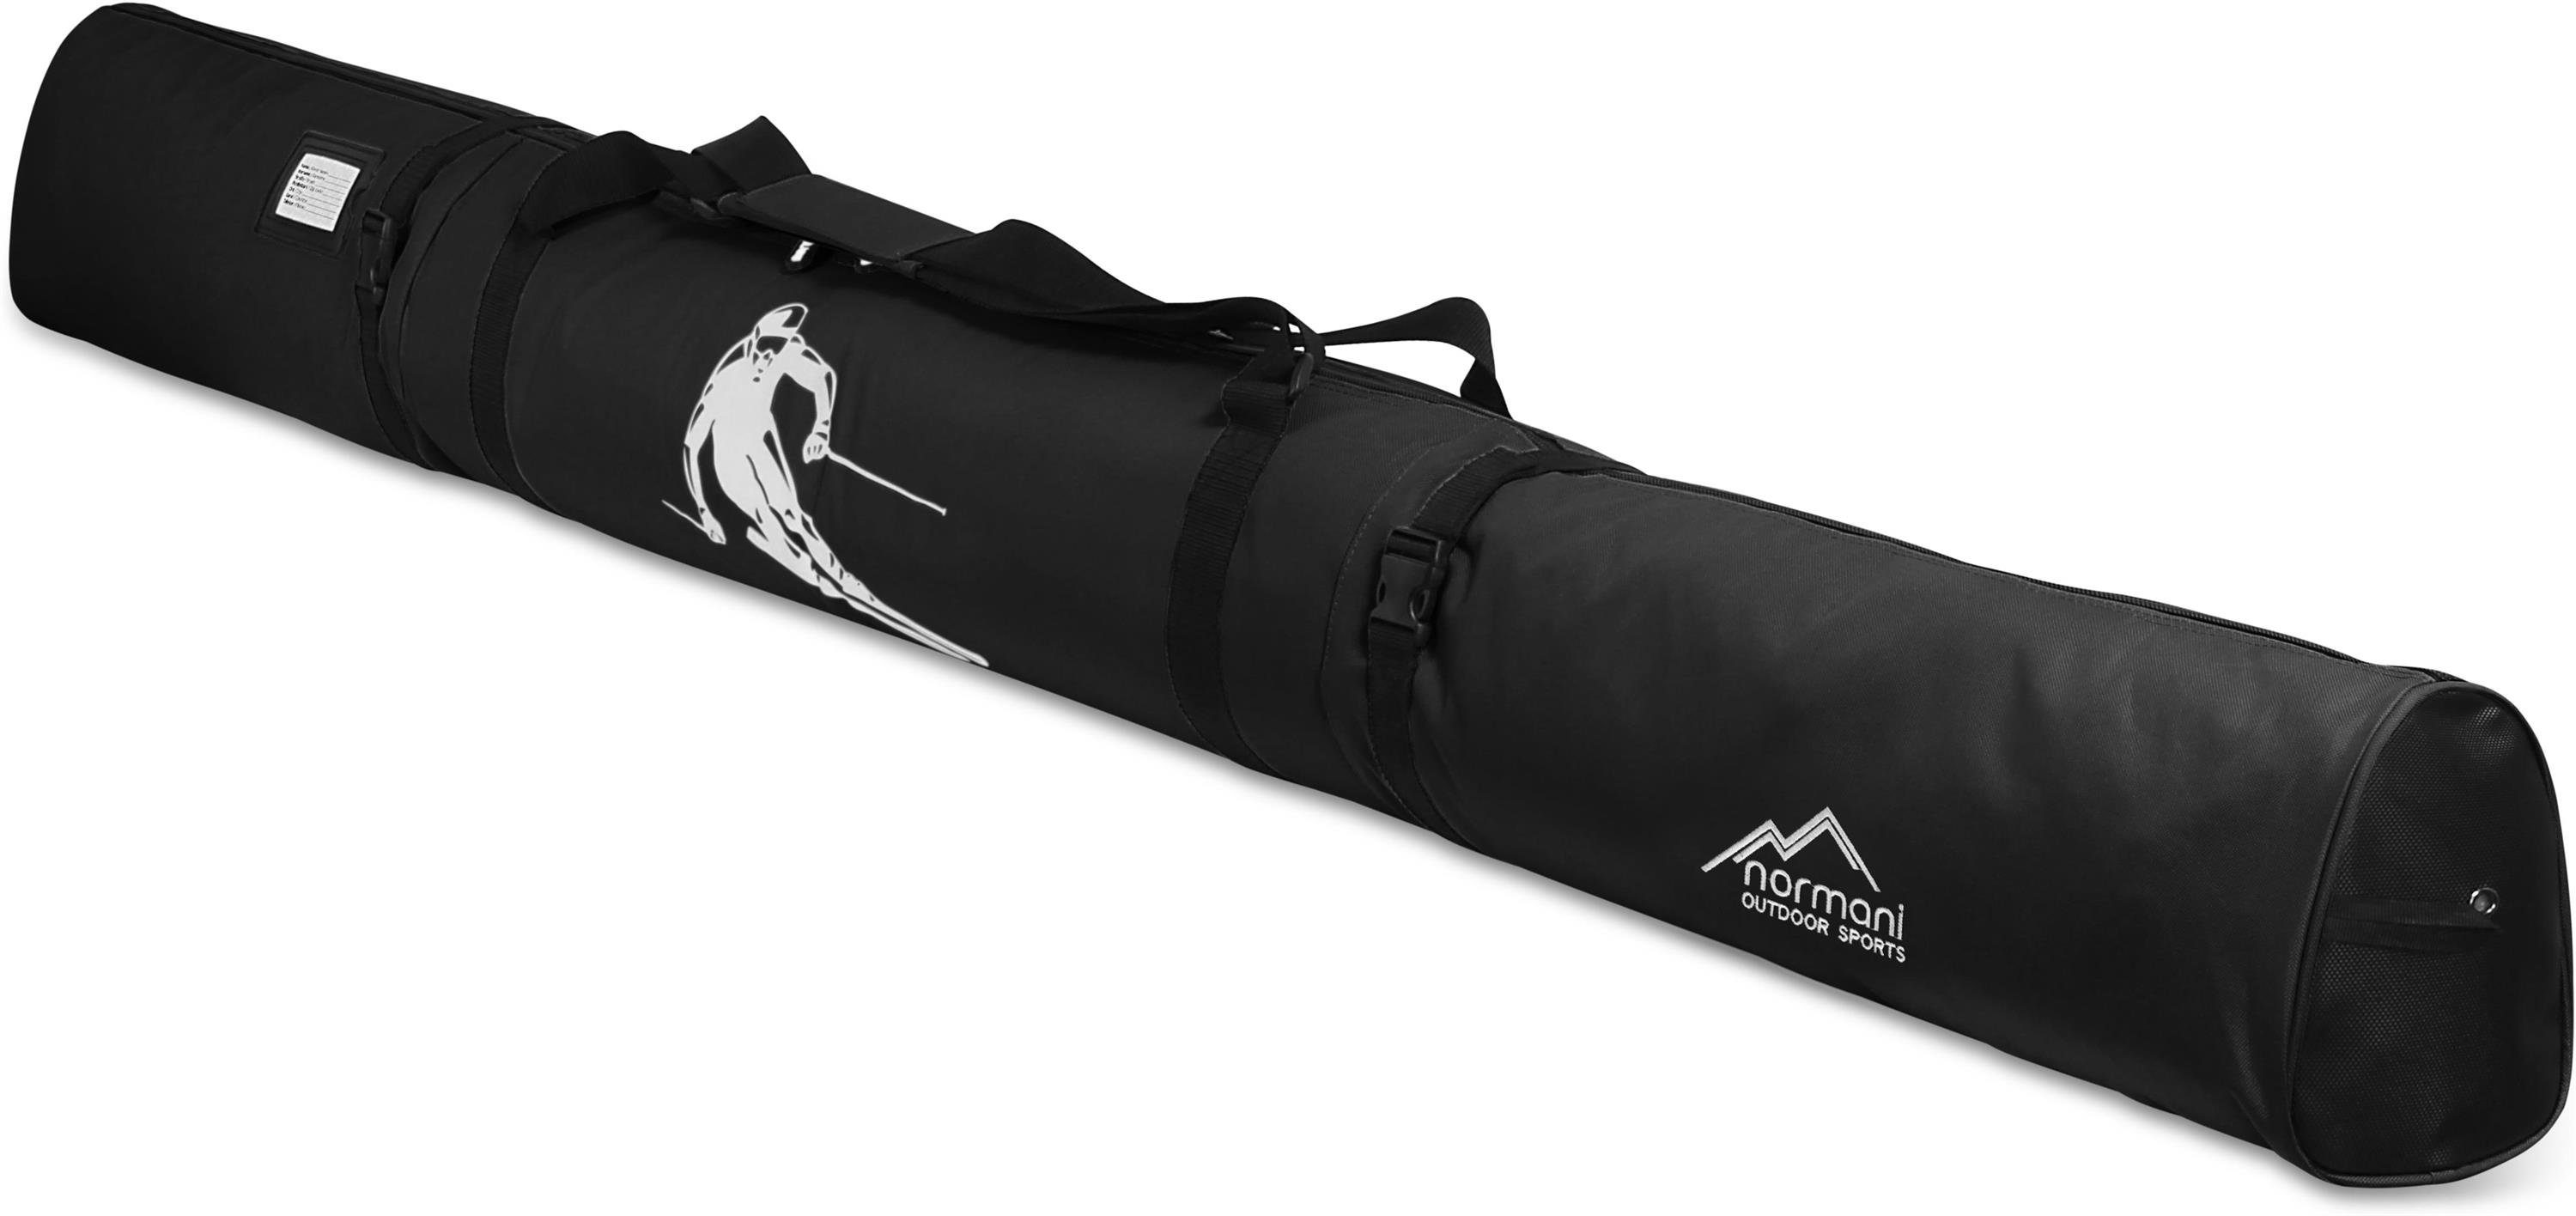 normani Sporttasche Skitasche Alpine Run 170, Skitasche für Skier und Skistöcke Skihülle Transporttasche Aufbewahrungstasche Schwarz